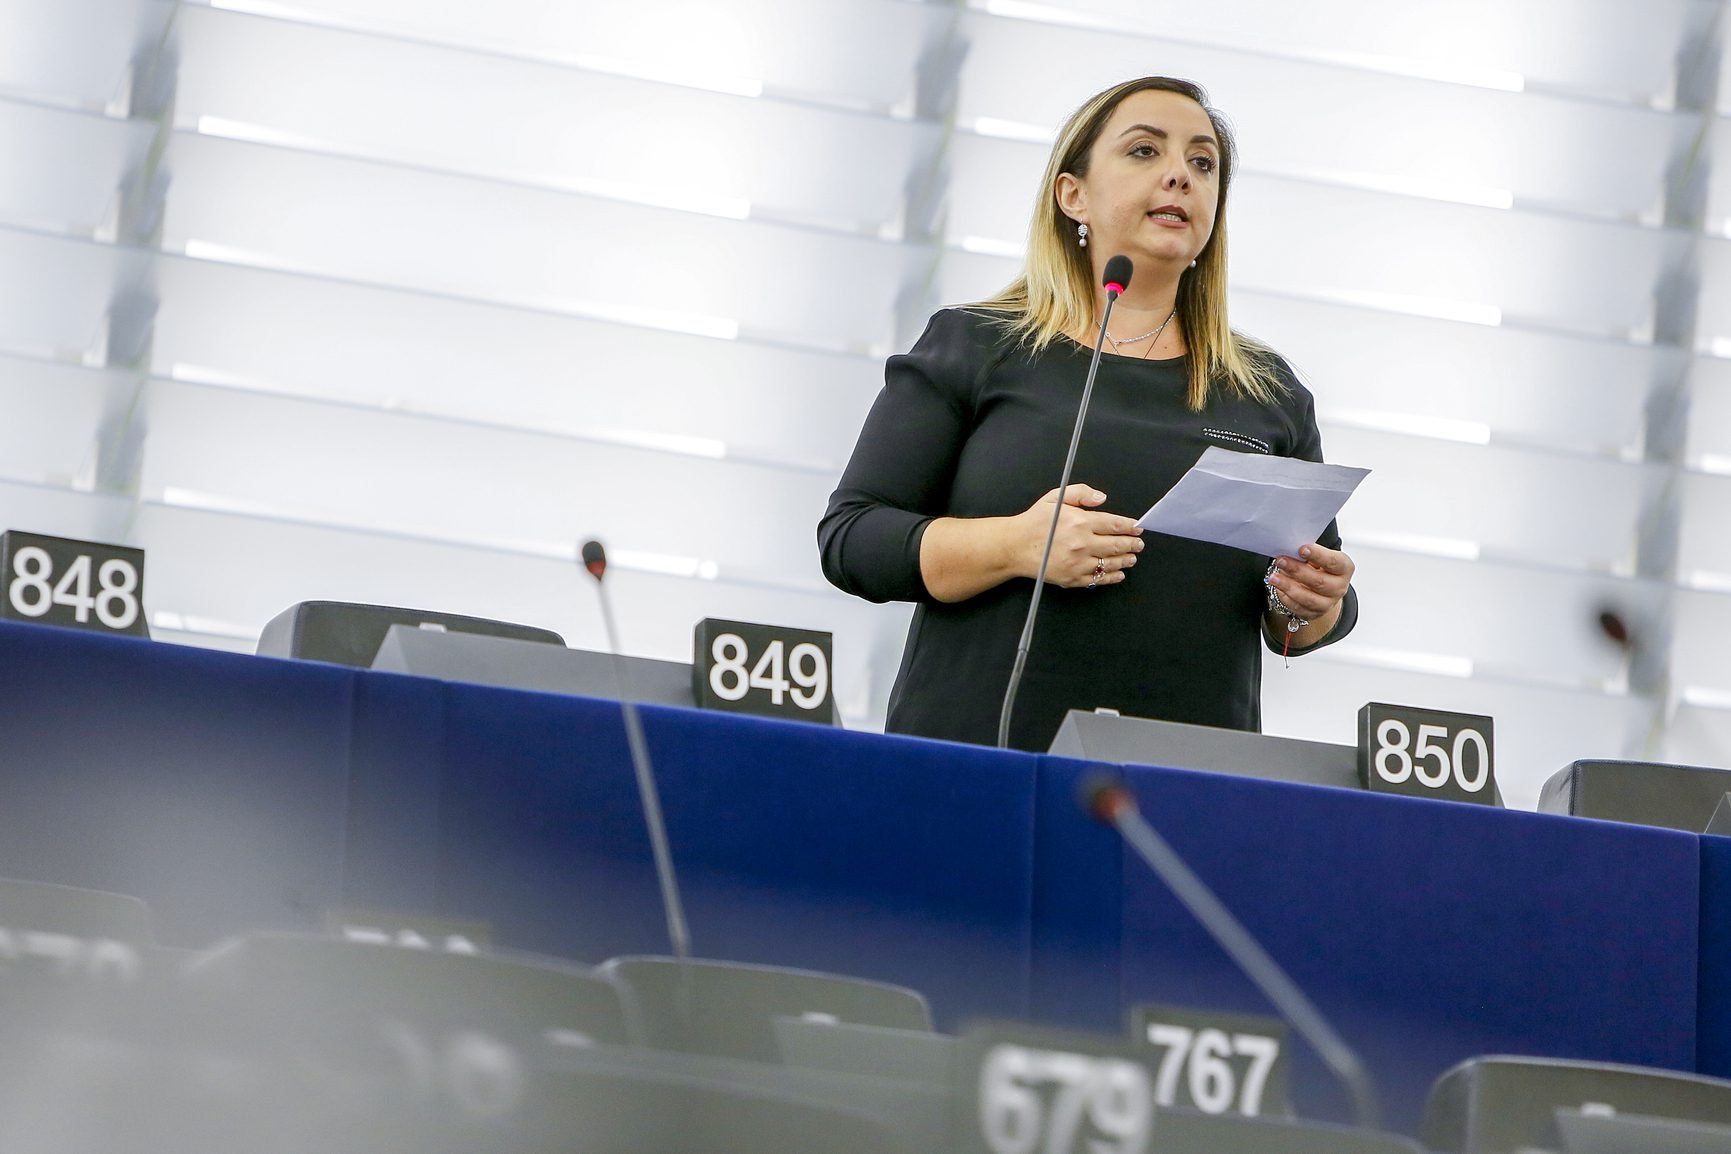 Violenza di genere, l’eurodeputata Adinolfi (FI): “Basta tolleranza, pene esemplari per chi commette violenze contro le donne”